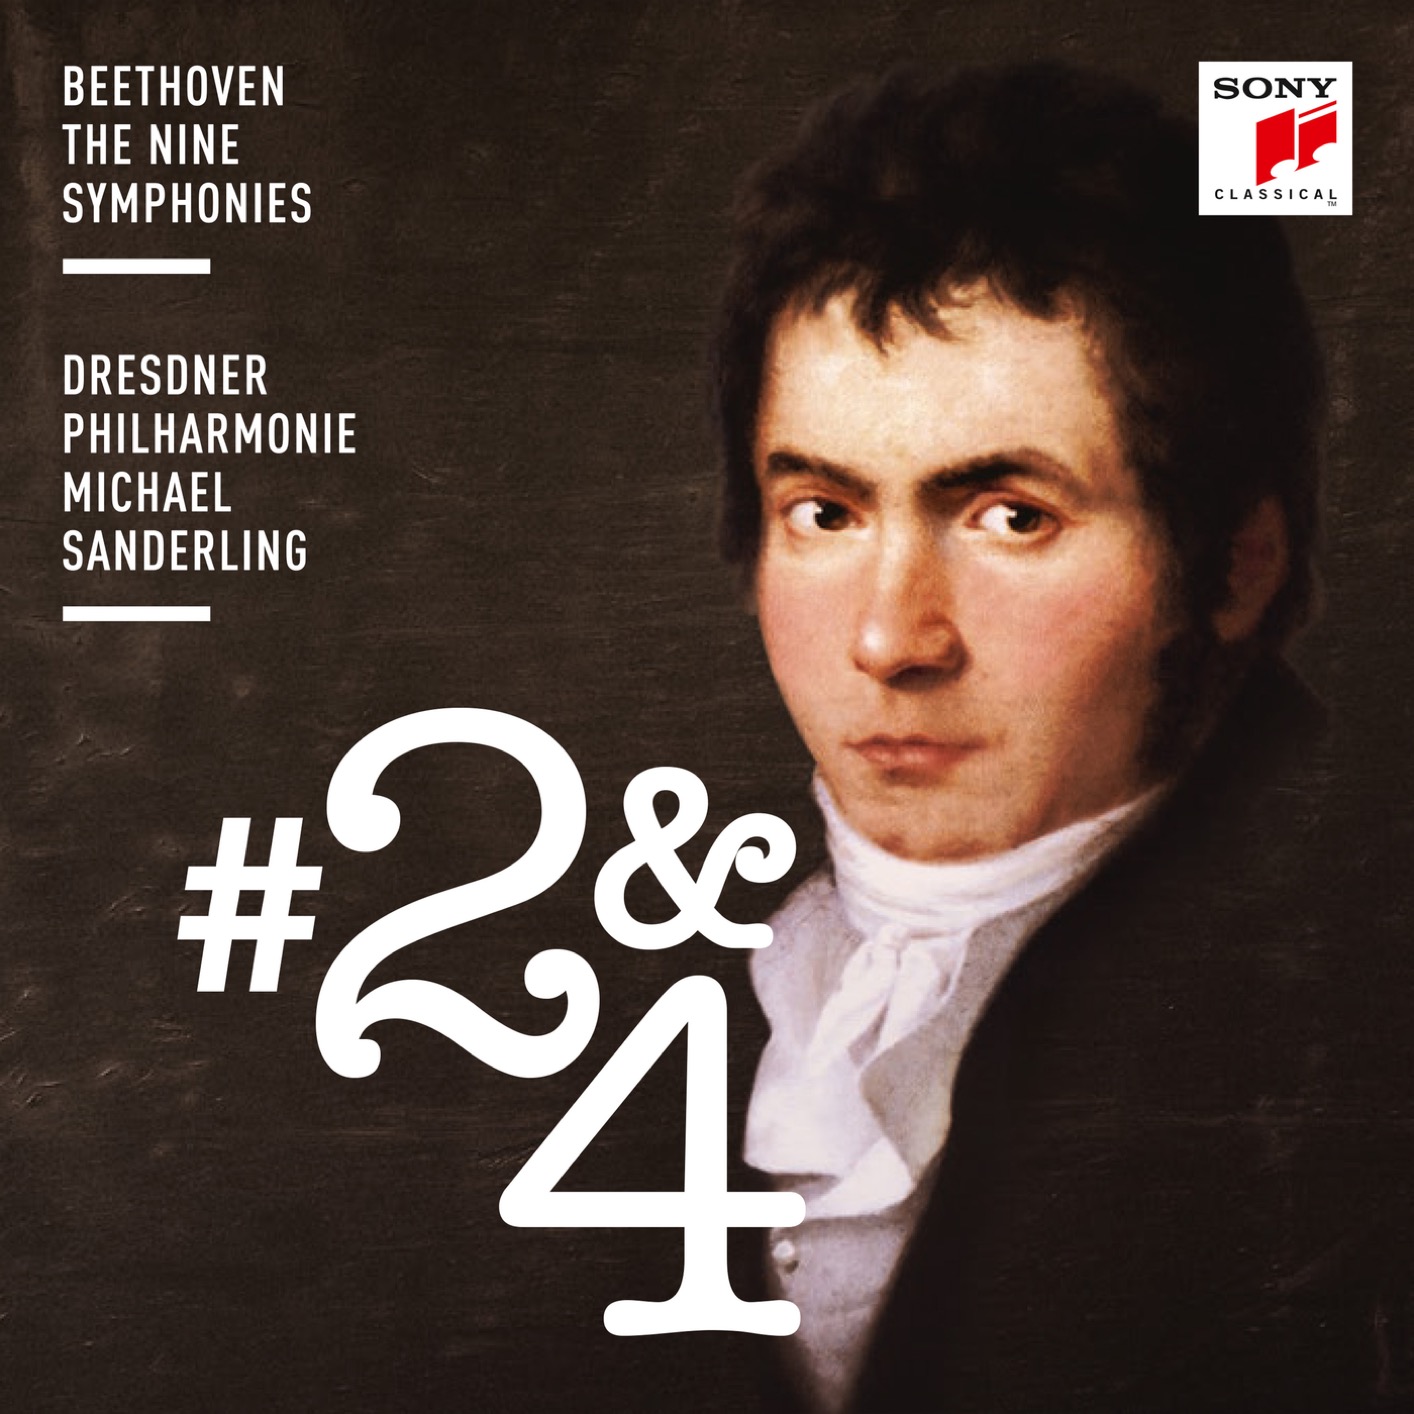 Dresdner Philharmonie & Michael Sanderling - Beethoven: Symphonies Nos. 2 & 4 (2018) [FLAC 24bit/96kHz]